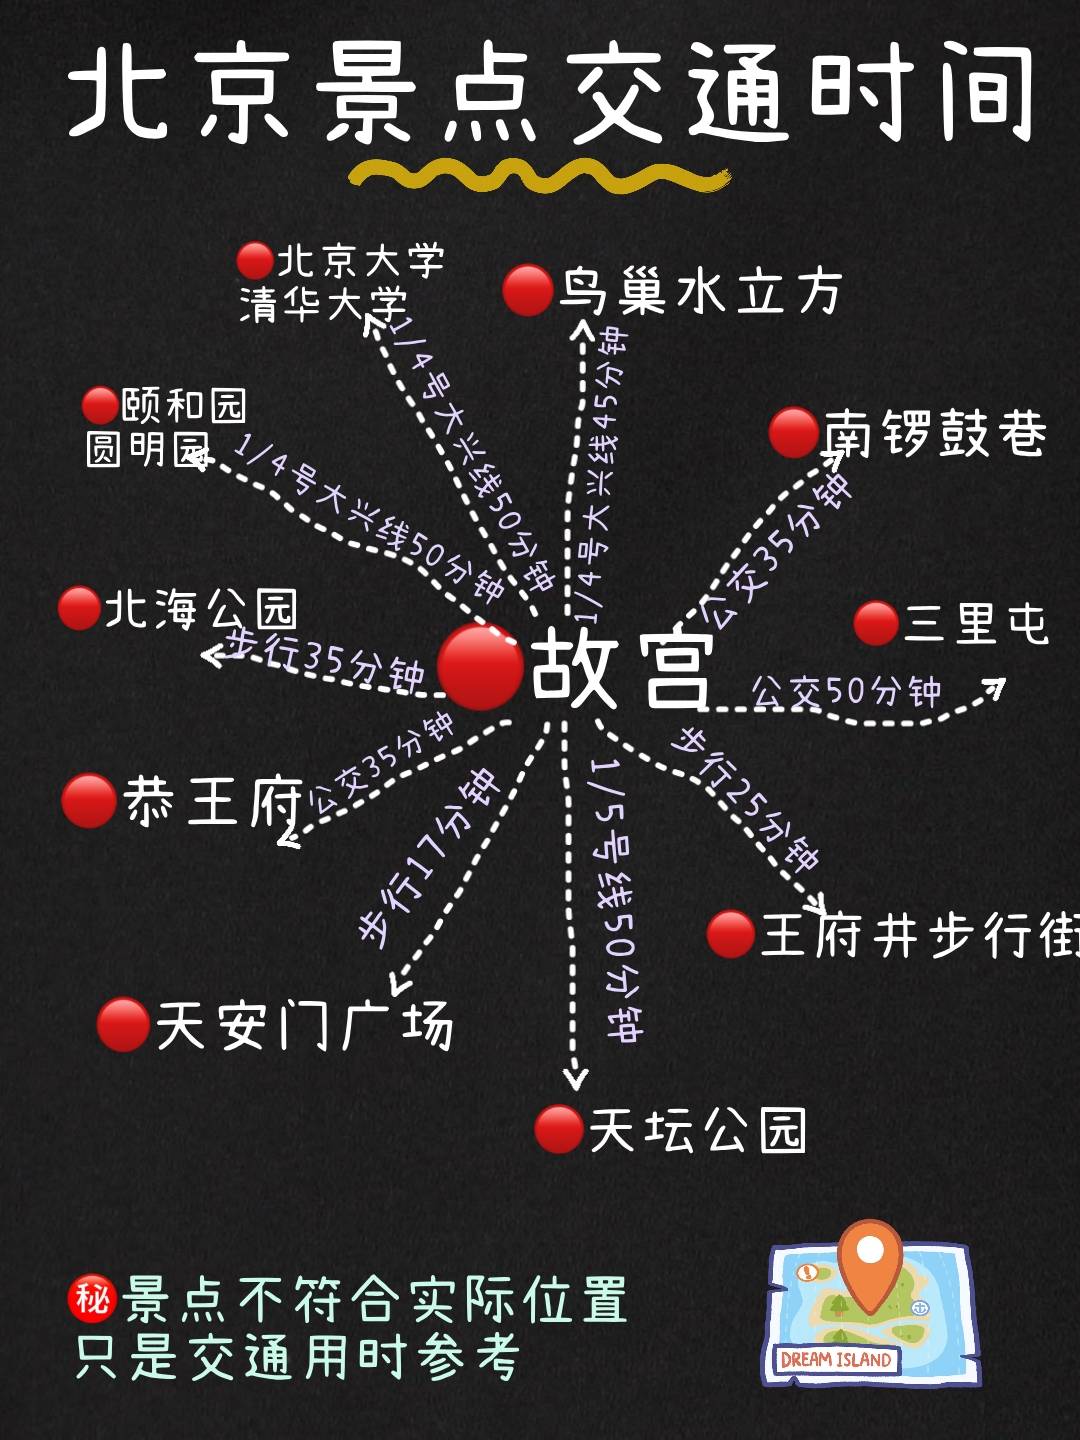 北京旅游攻略景点地图游玩路线北京地铁沿线景点